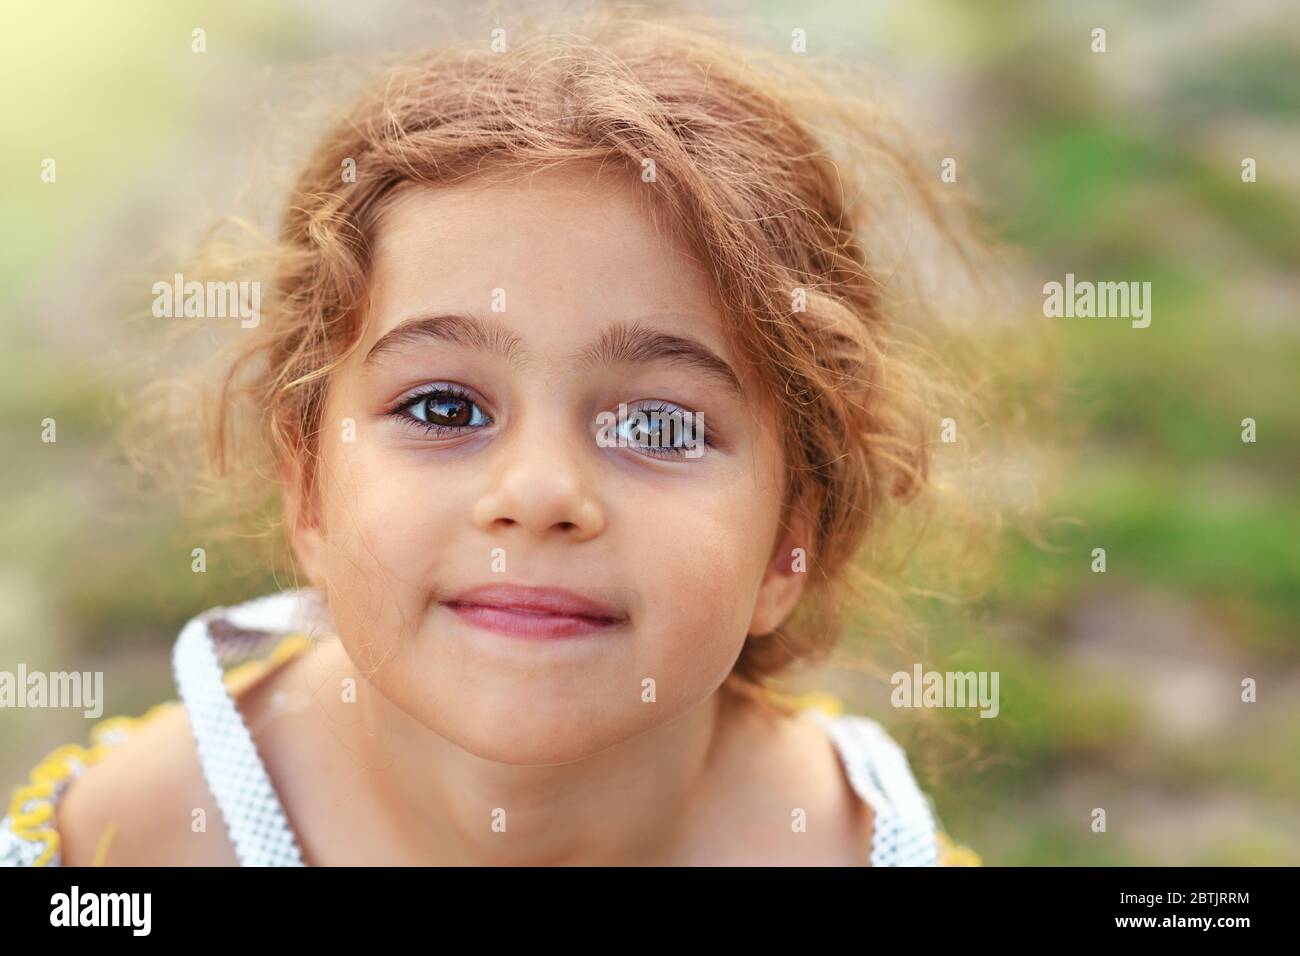 Porträt von lächelnd niedlichen kleinen Mädchen im grünen Sommerpark. Glückliches Kind, das die Kamera anschaut Stockfoto